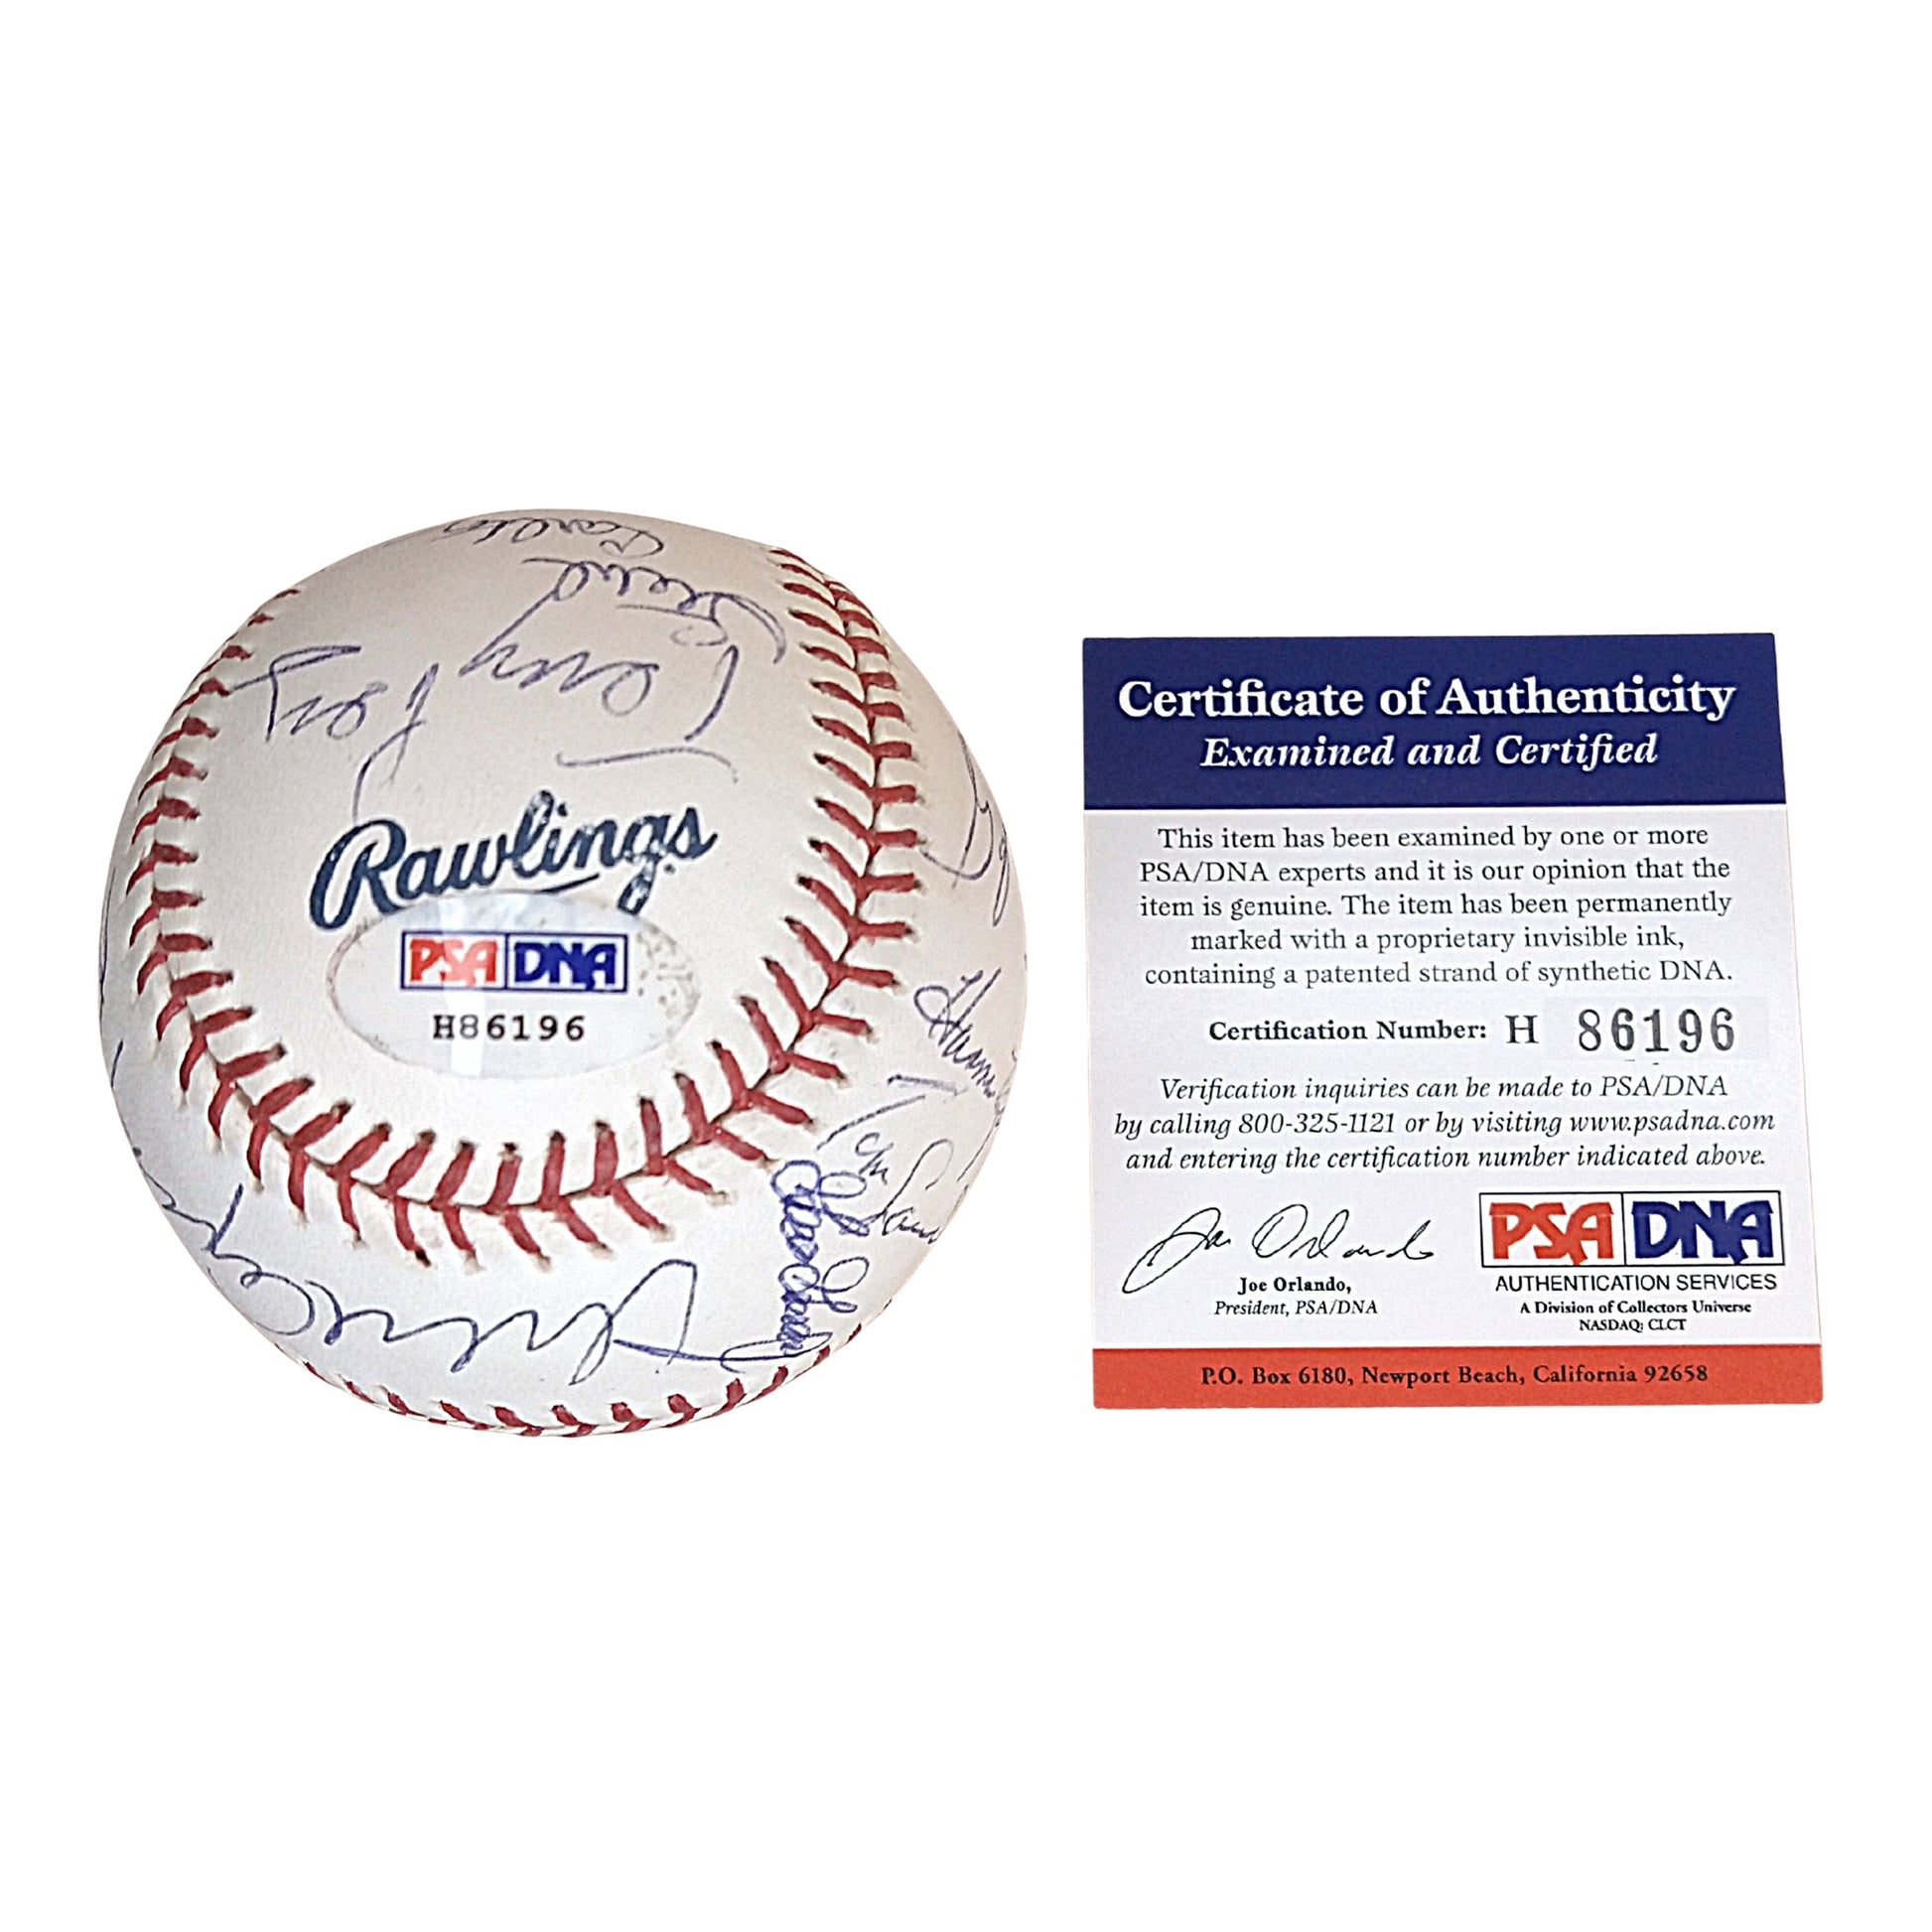 Rickey Henderson Autographed HOF Logo Baseball